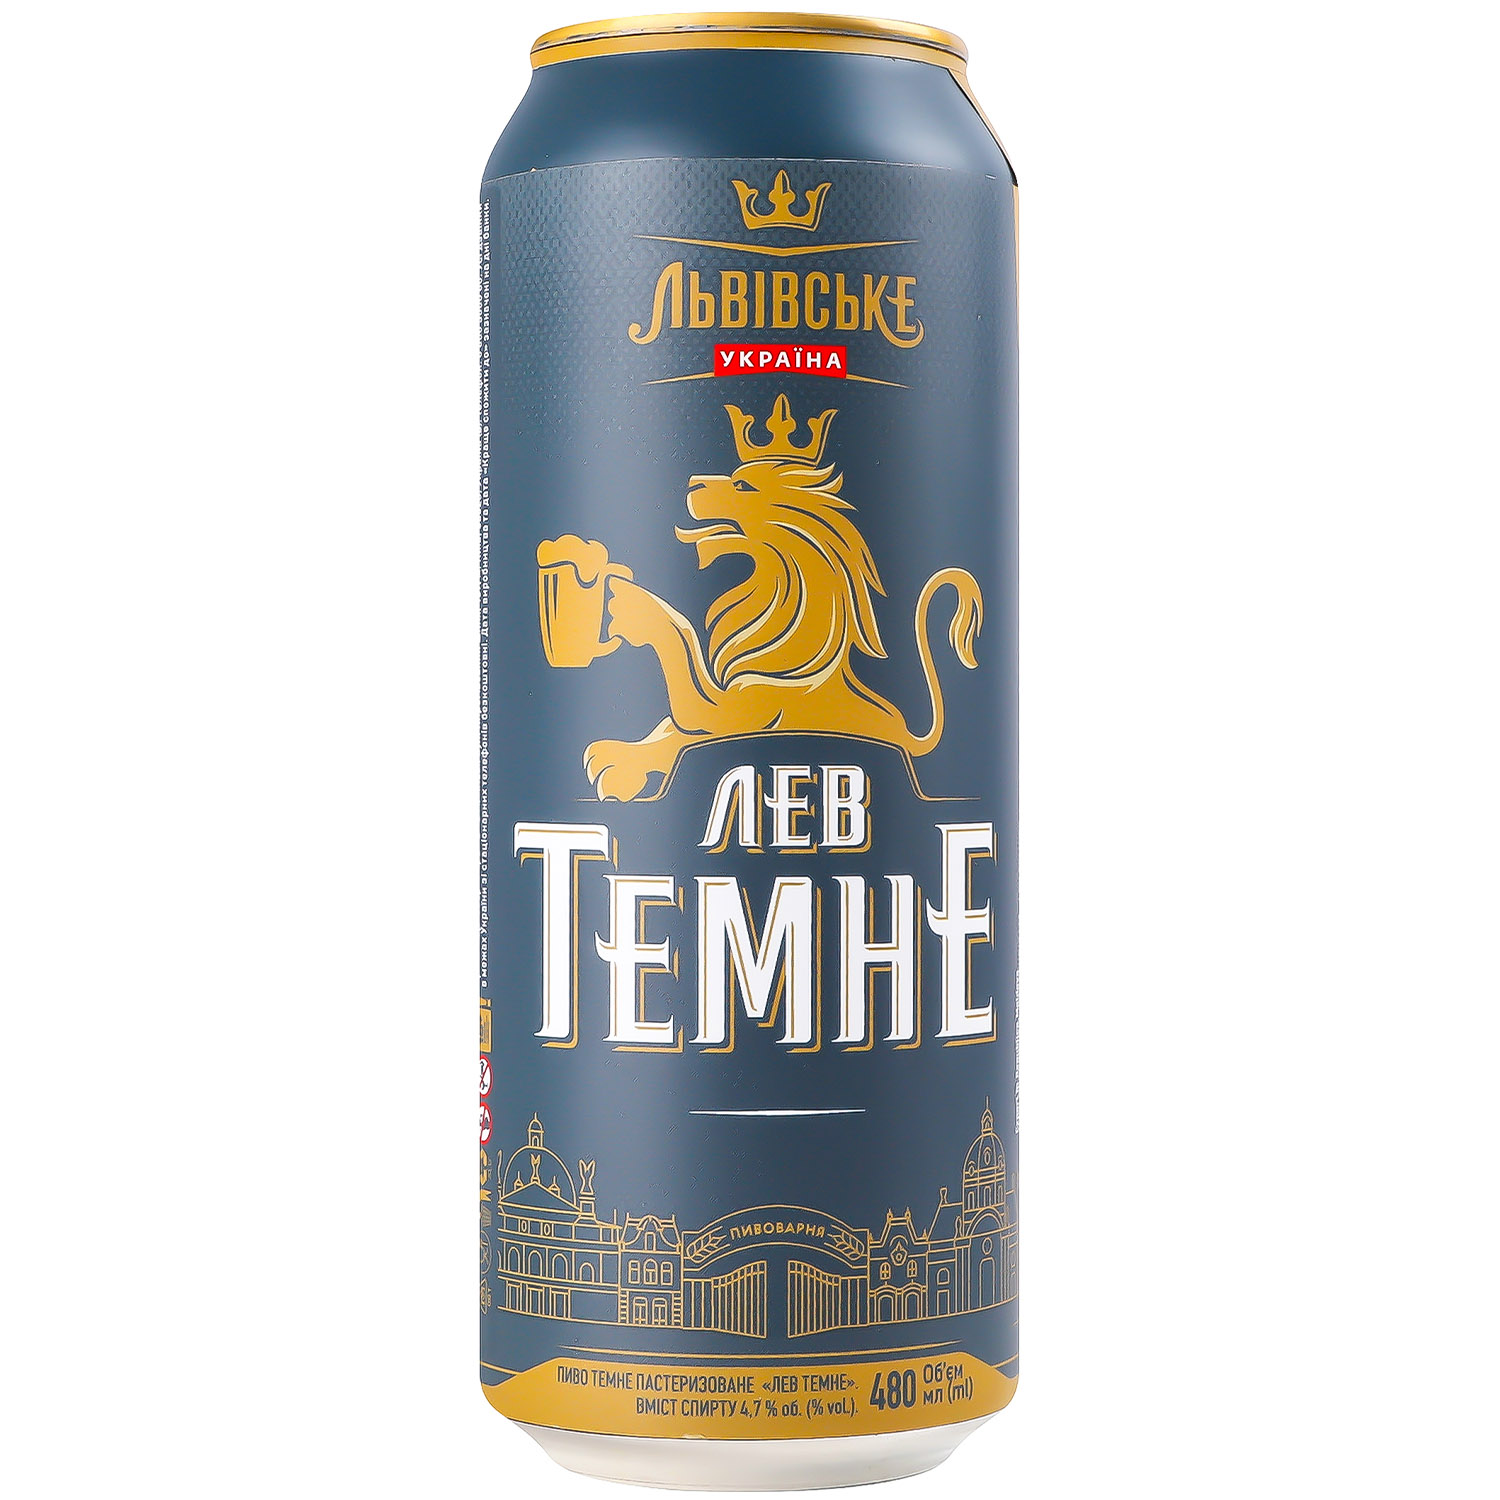 Пиво Львовское Лев темное 4.7% 0.48 л ж/б - фото 1